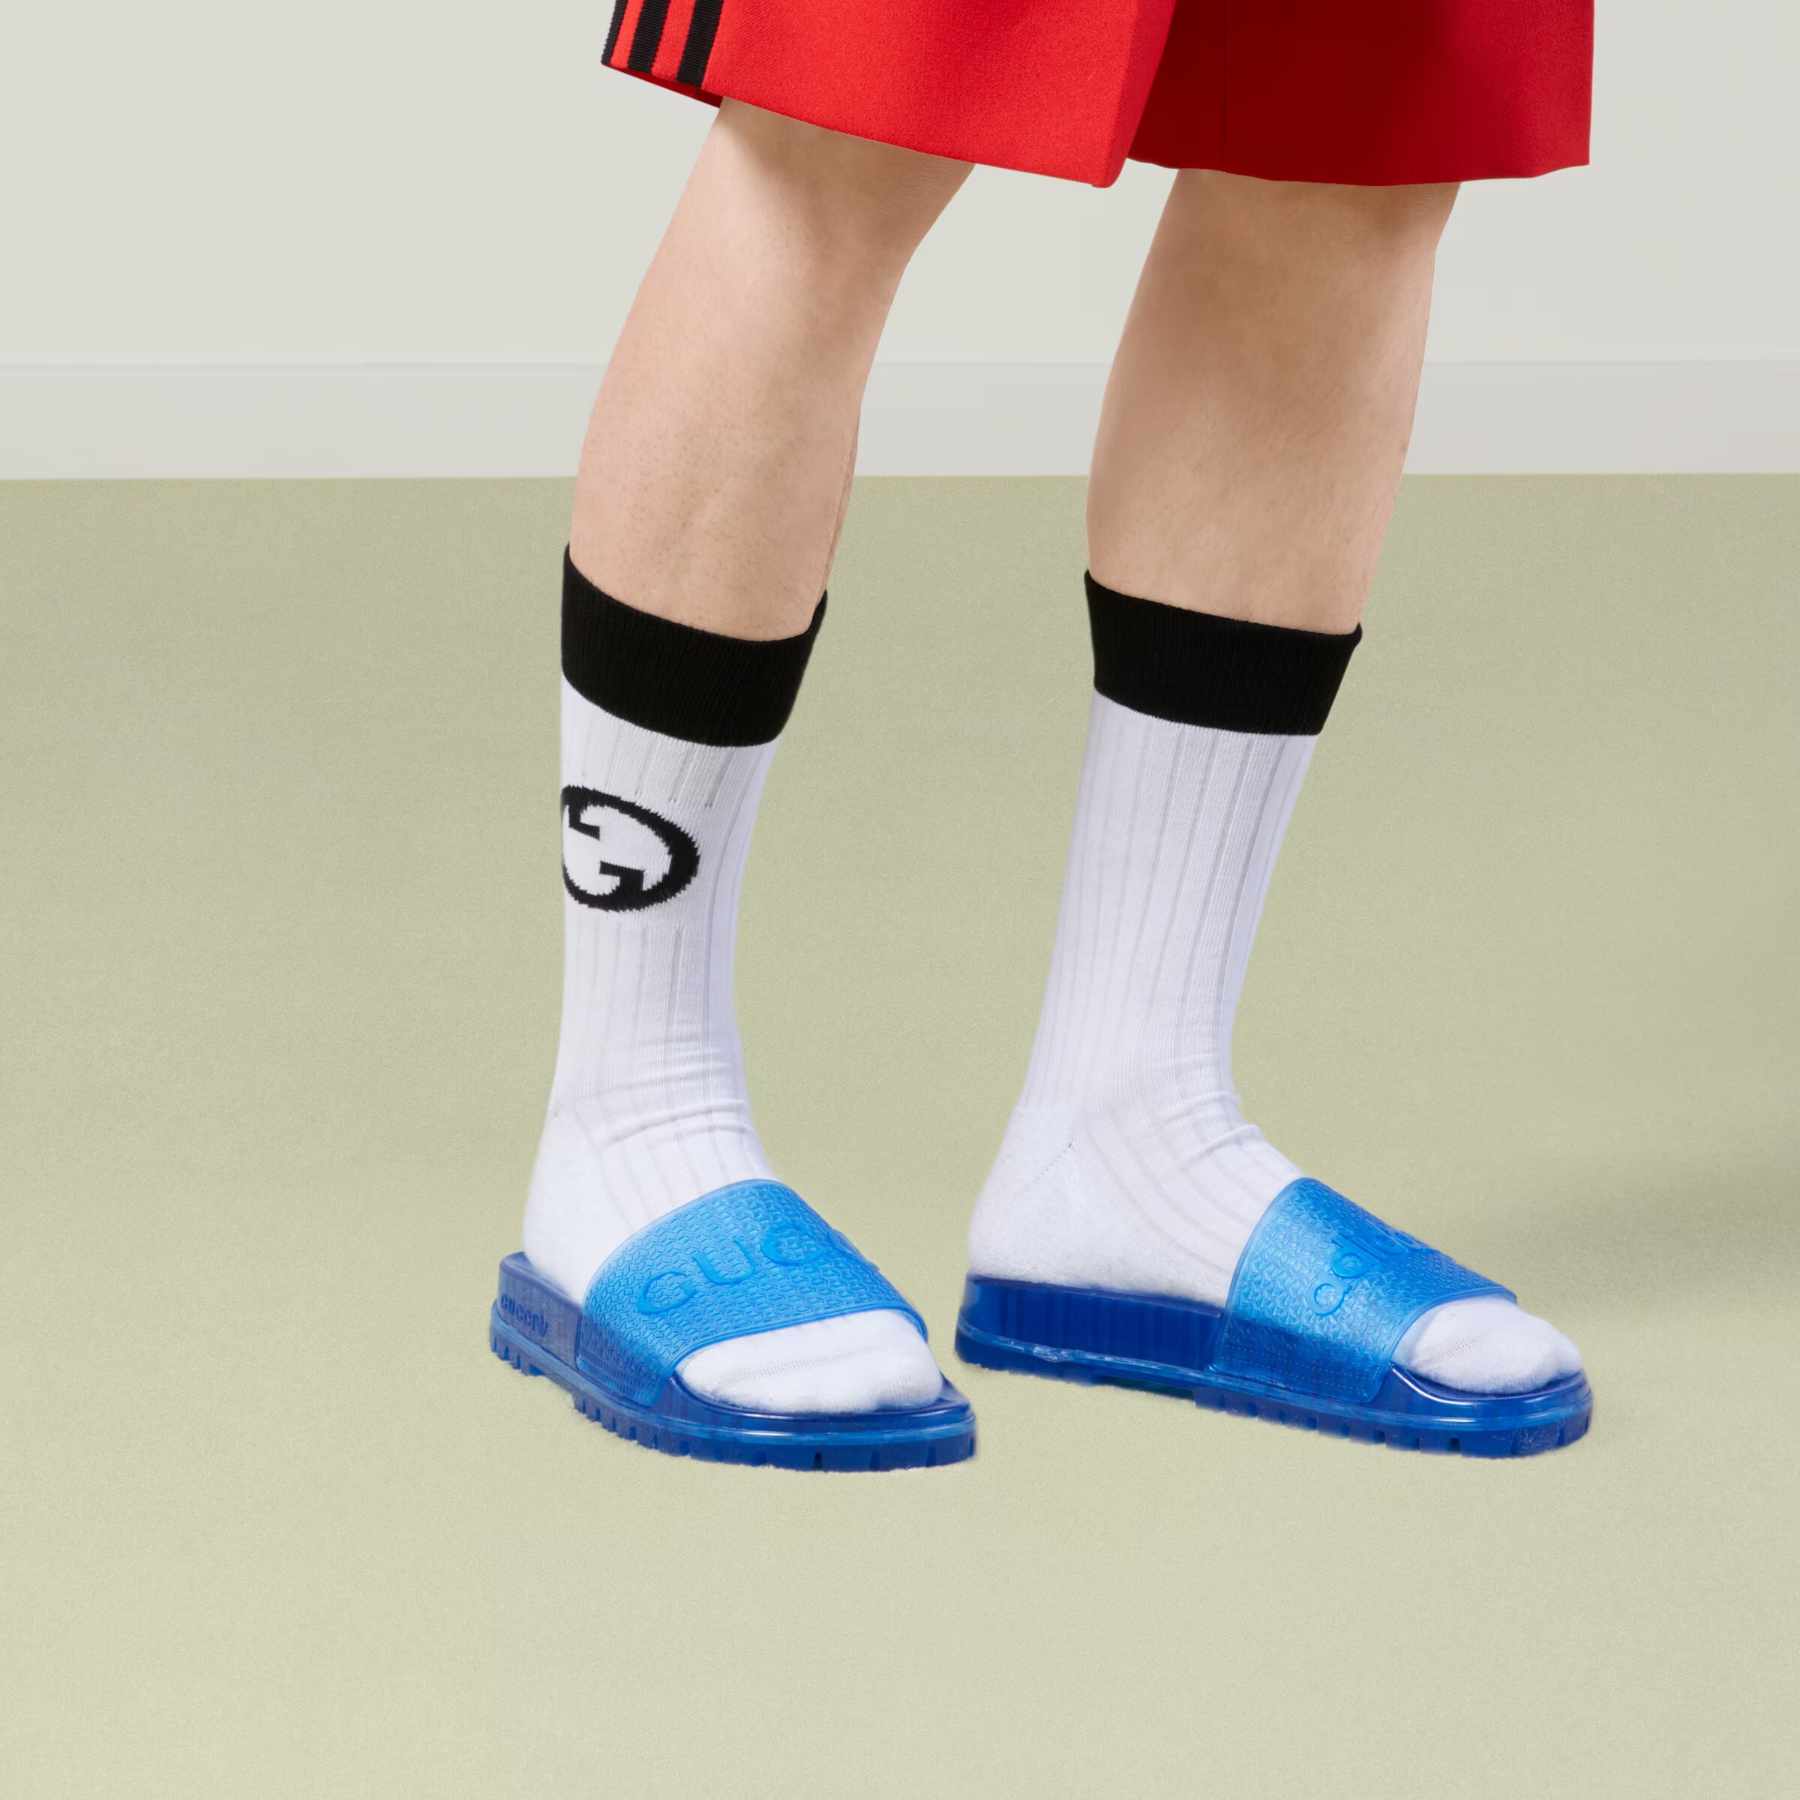 Spreekwoord september Literatuur adidas & Gucci Drop Second Sneaker-Focused Collab